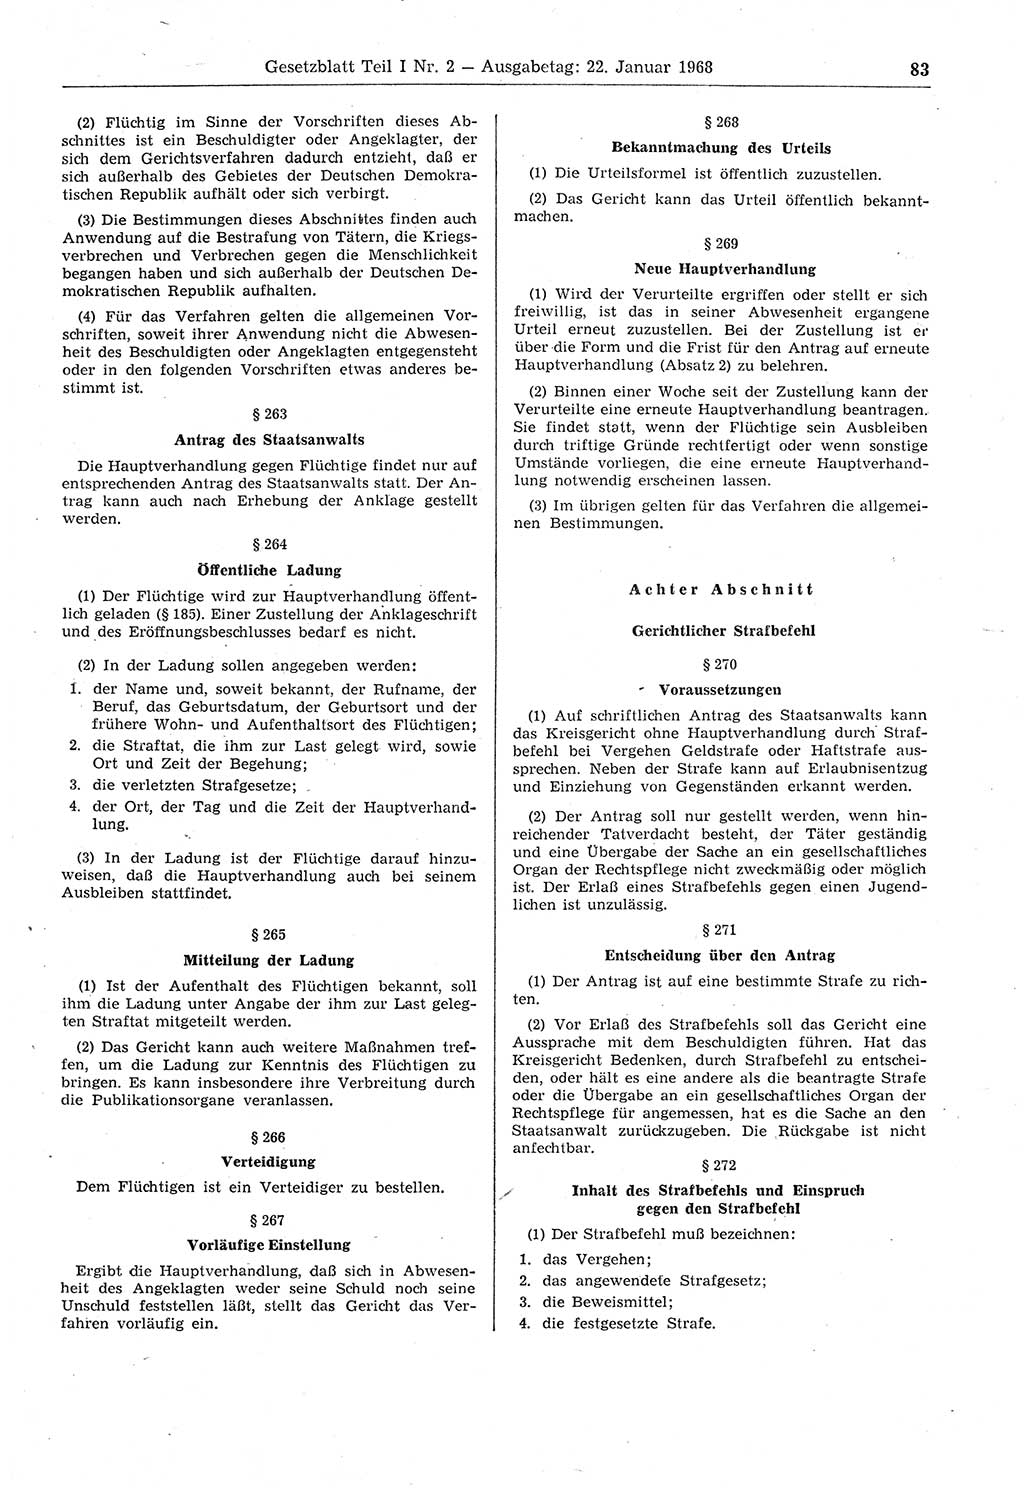 Gesetzblatt (GBl.) der Deutschen Demokratischen Republik (DDR) Teil Ⅰ 1968, Seite 83 (GBl. DDR Ⅰ 1968, S. 83)